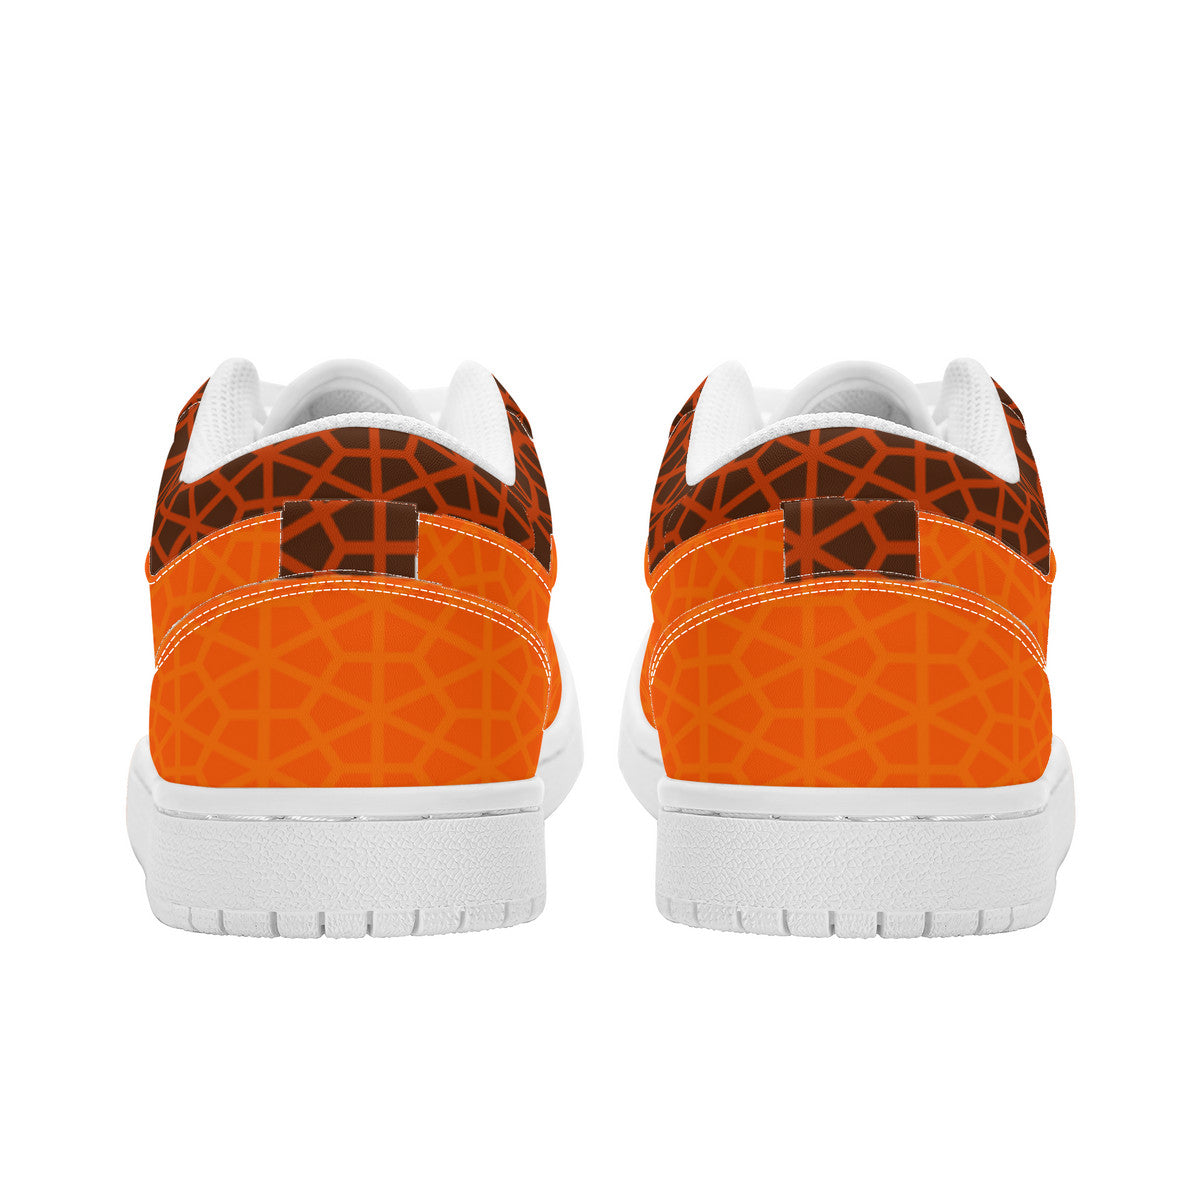 RVT Brand  Unisex Low Top Skateboard Sneakers - Orange Geom